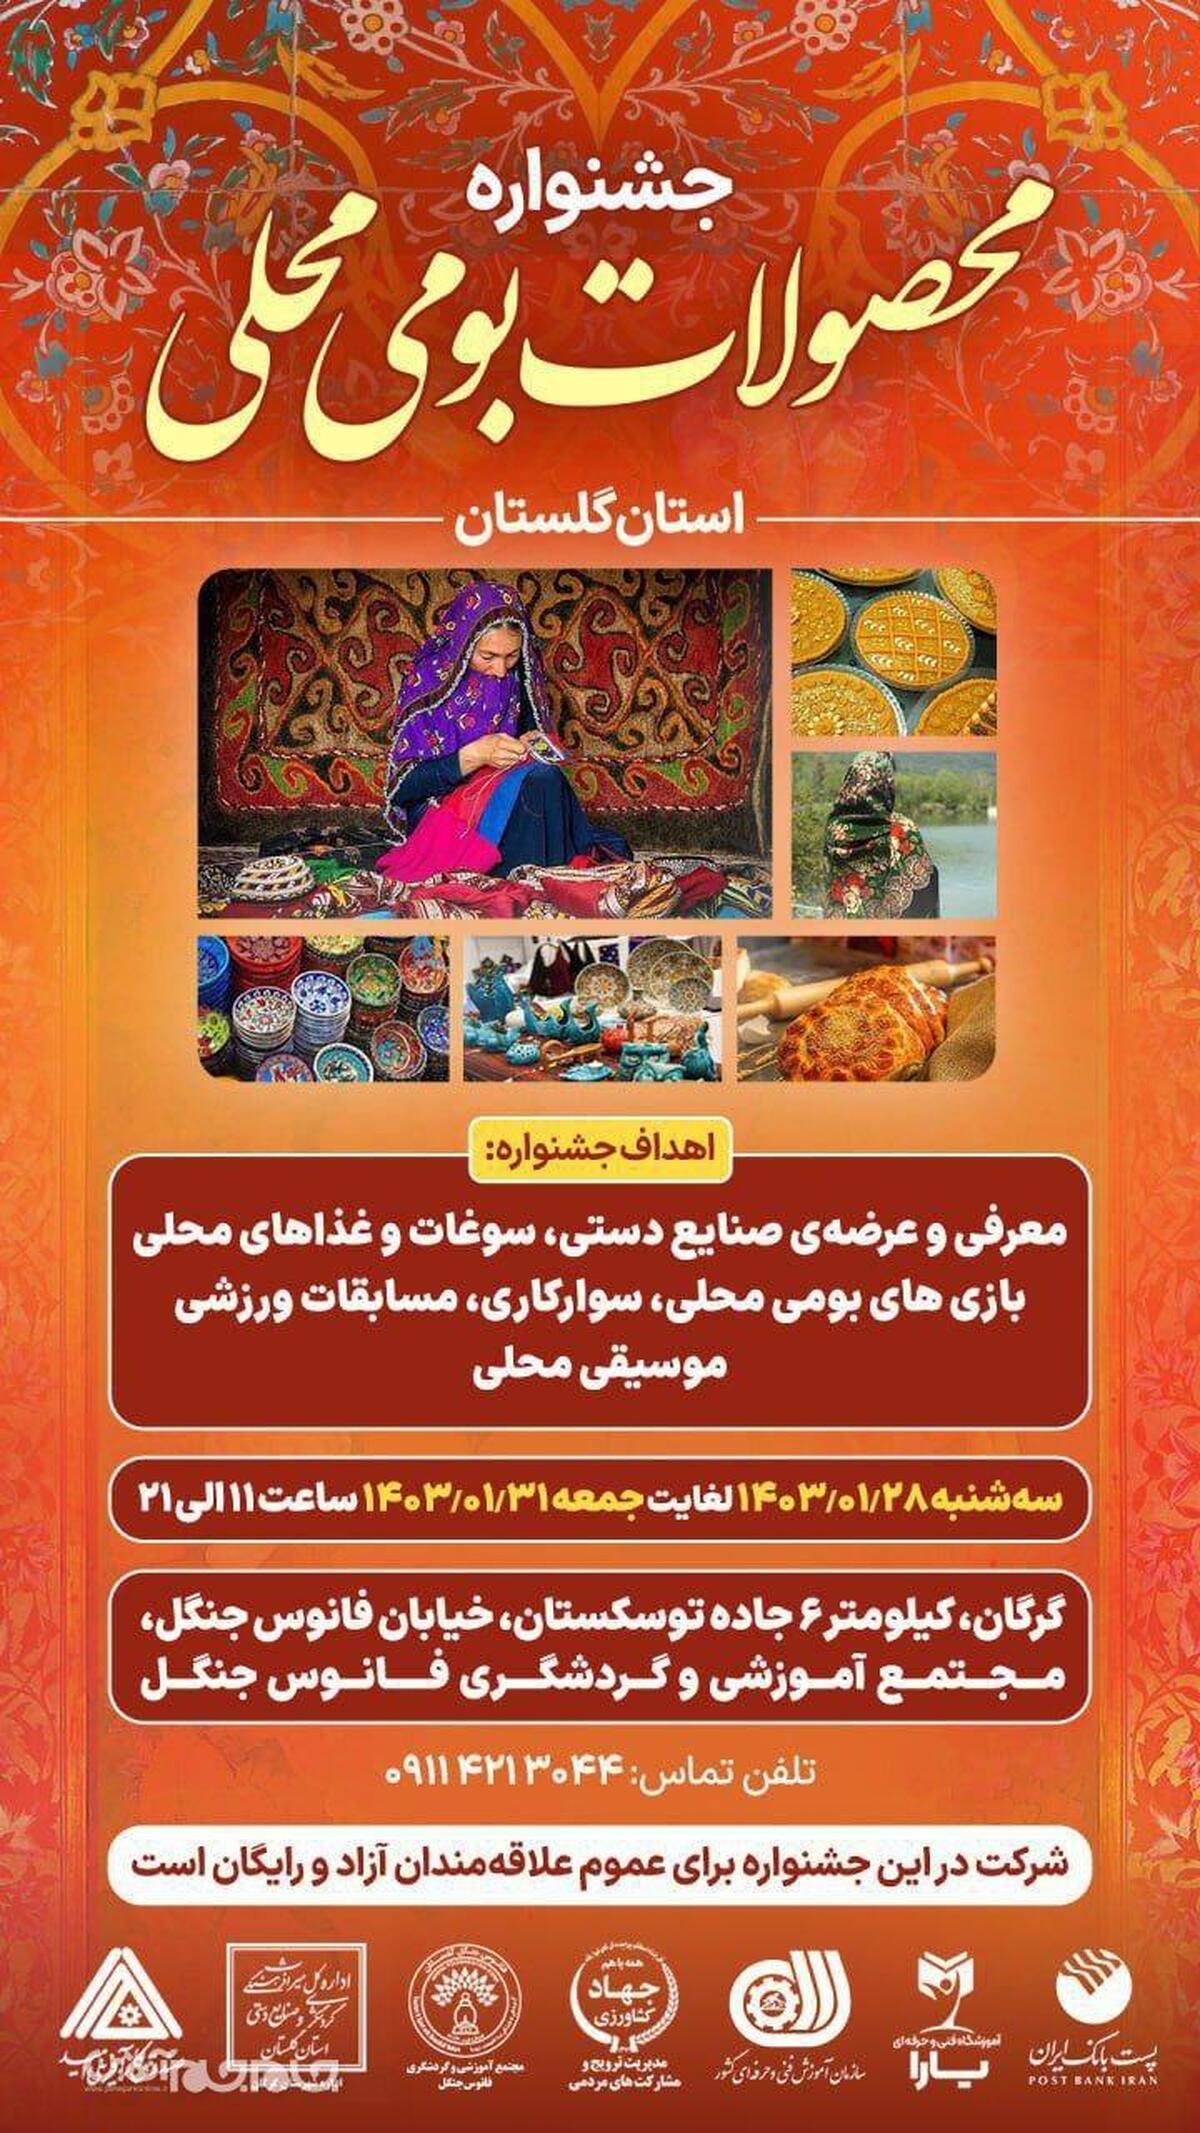 جشنواره محصولات بومی‌محلی استان گلستان از روز ۲۸ لغایت ۳۱ فروردین ماه سال جاری در مجتمع آموزشی و گردشگری فانوس جنگل در شهرستان گرگان برگزار می‌شود.